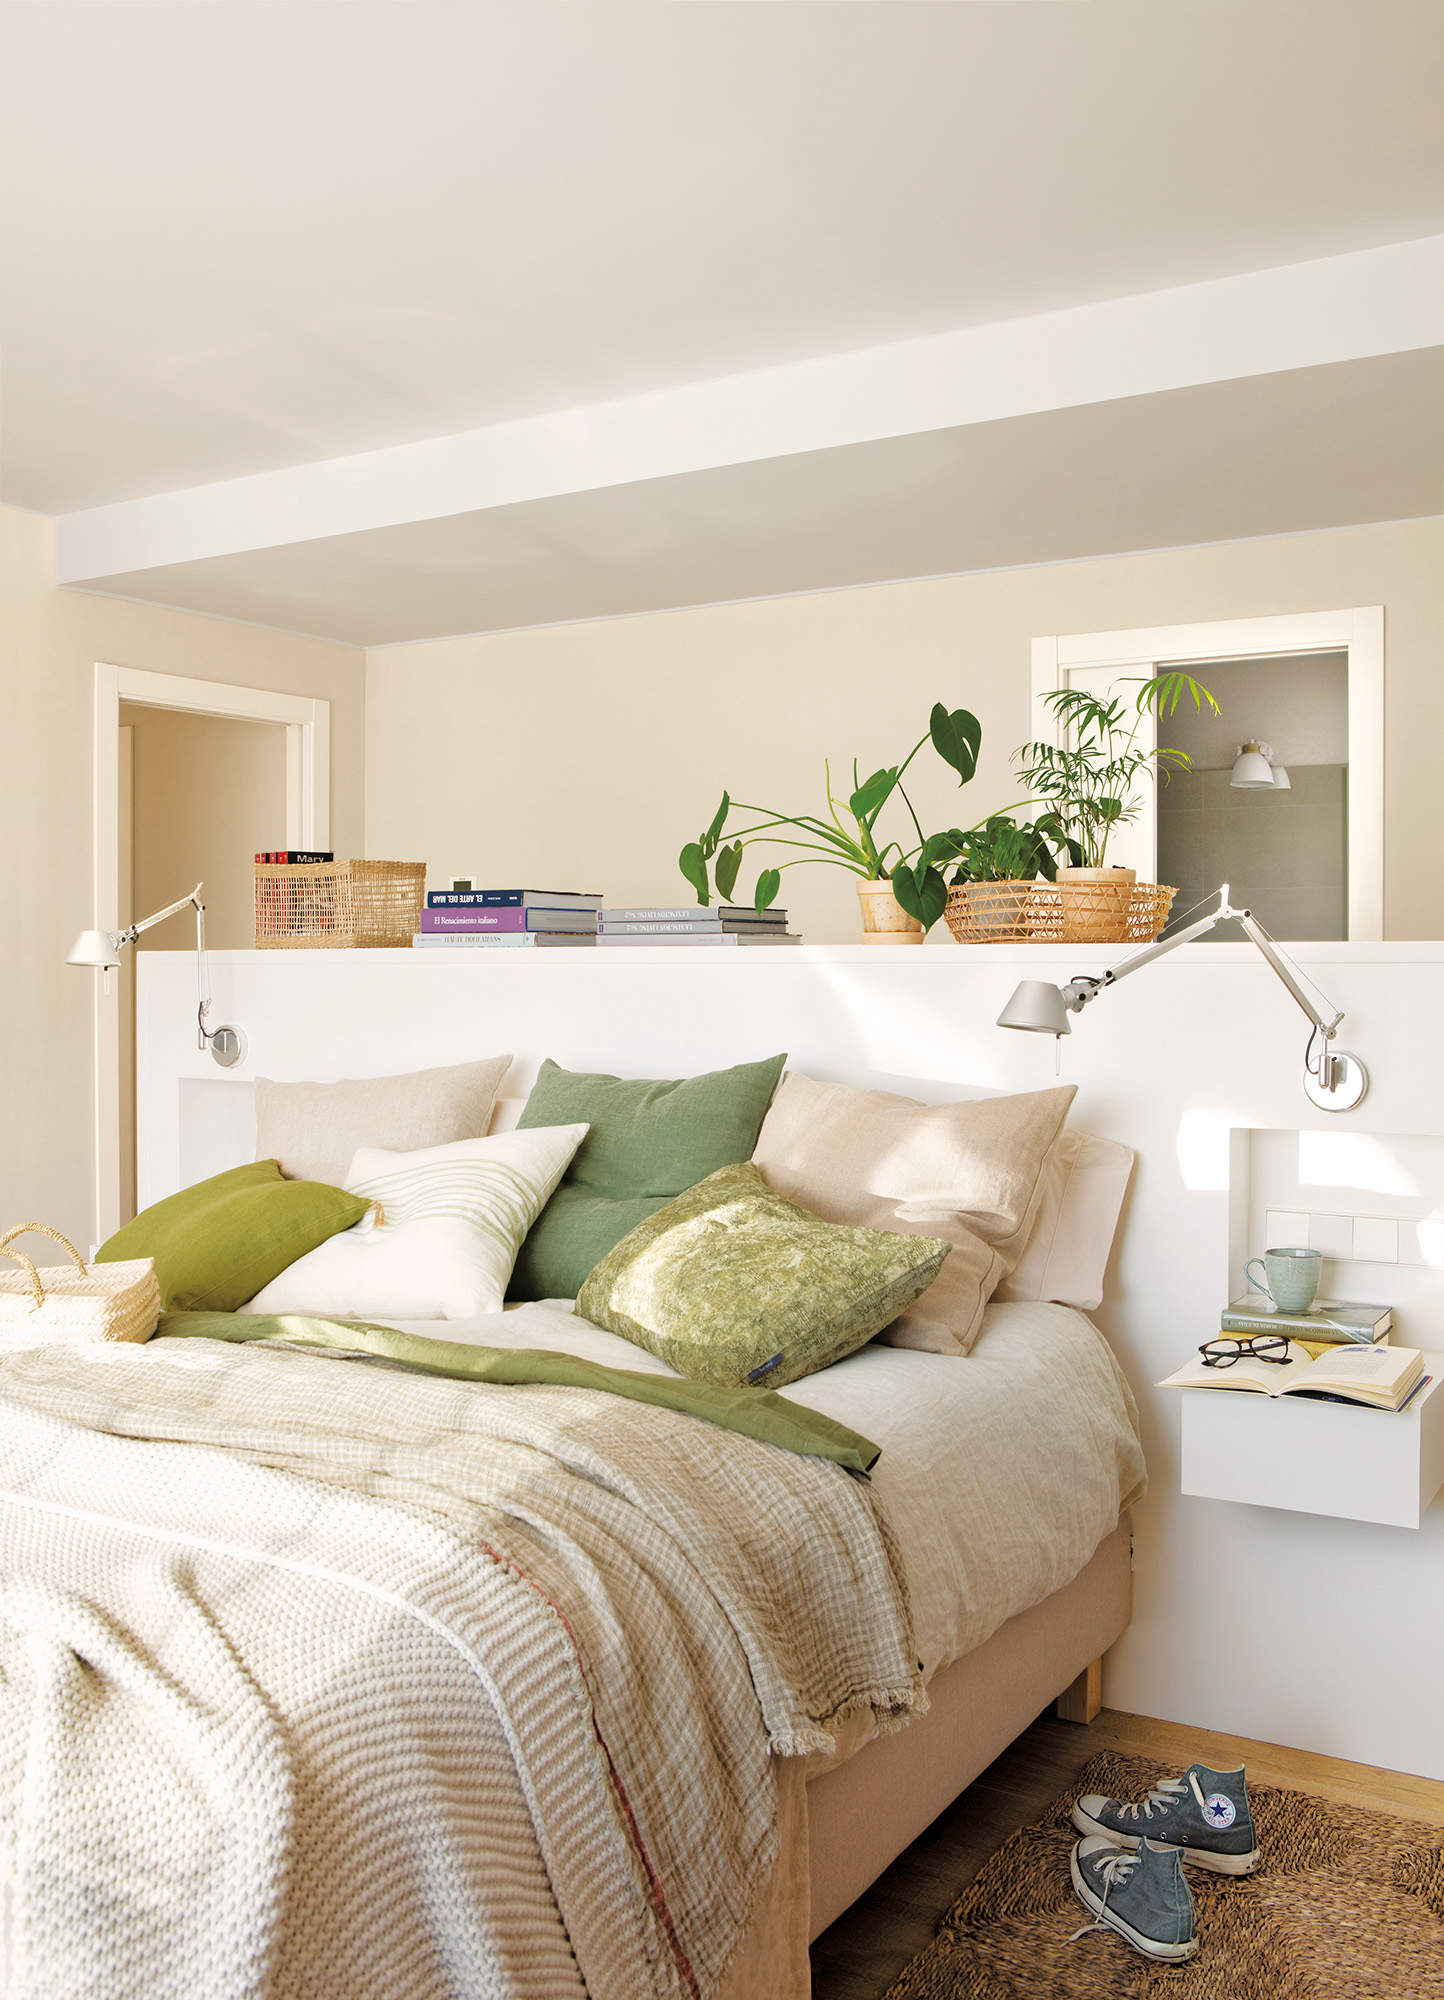 Dormitorio con cabecero exento a media altura y apliques de diseño